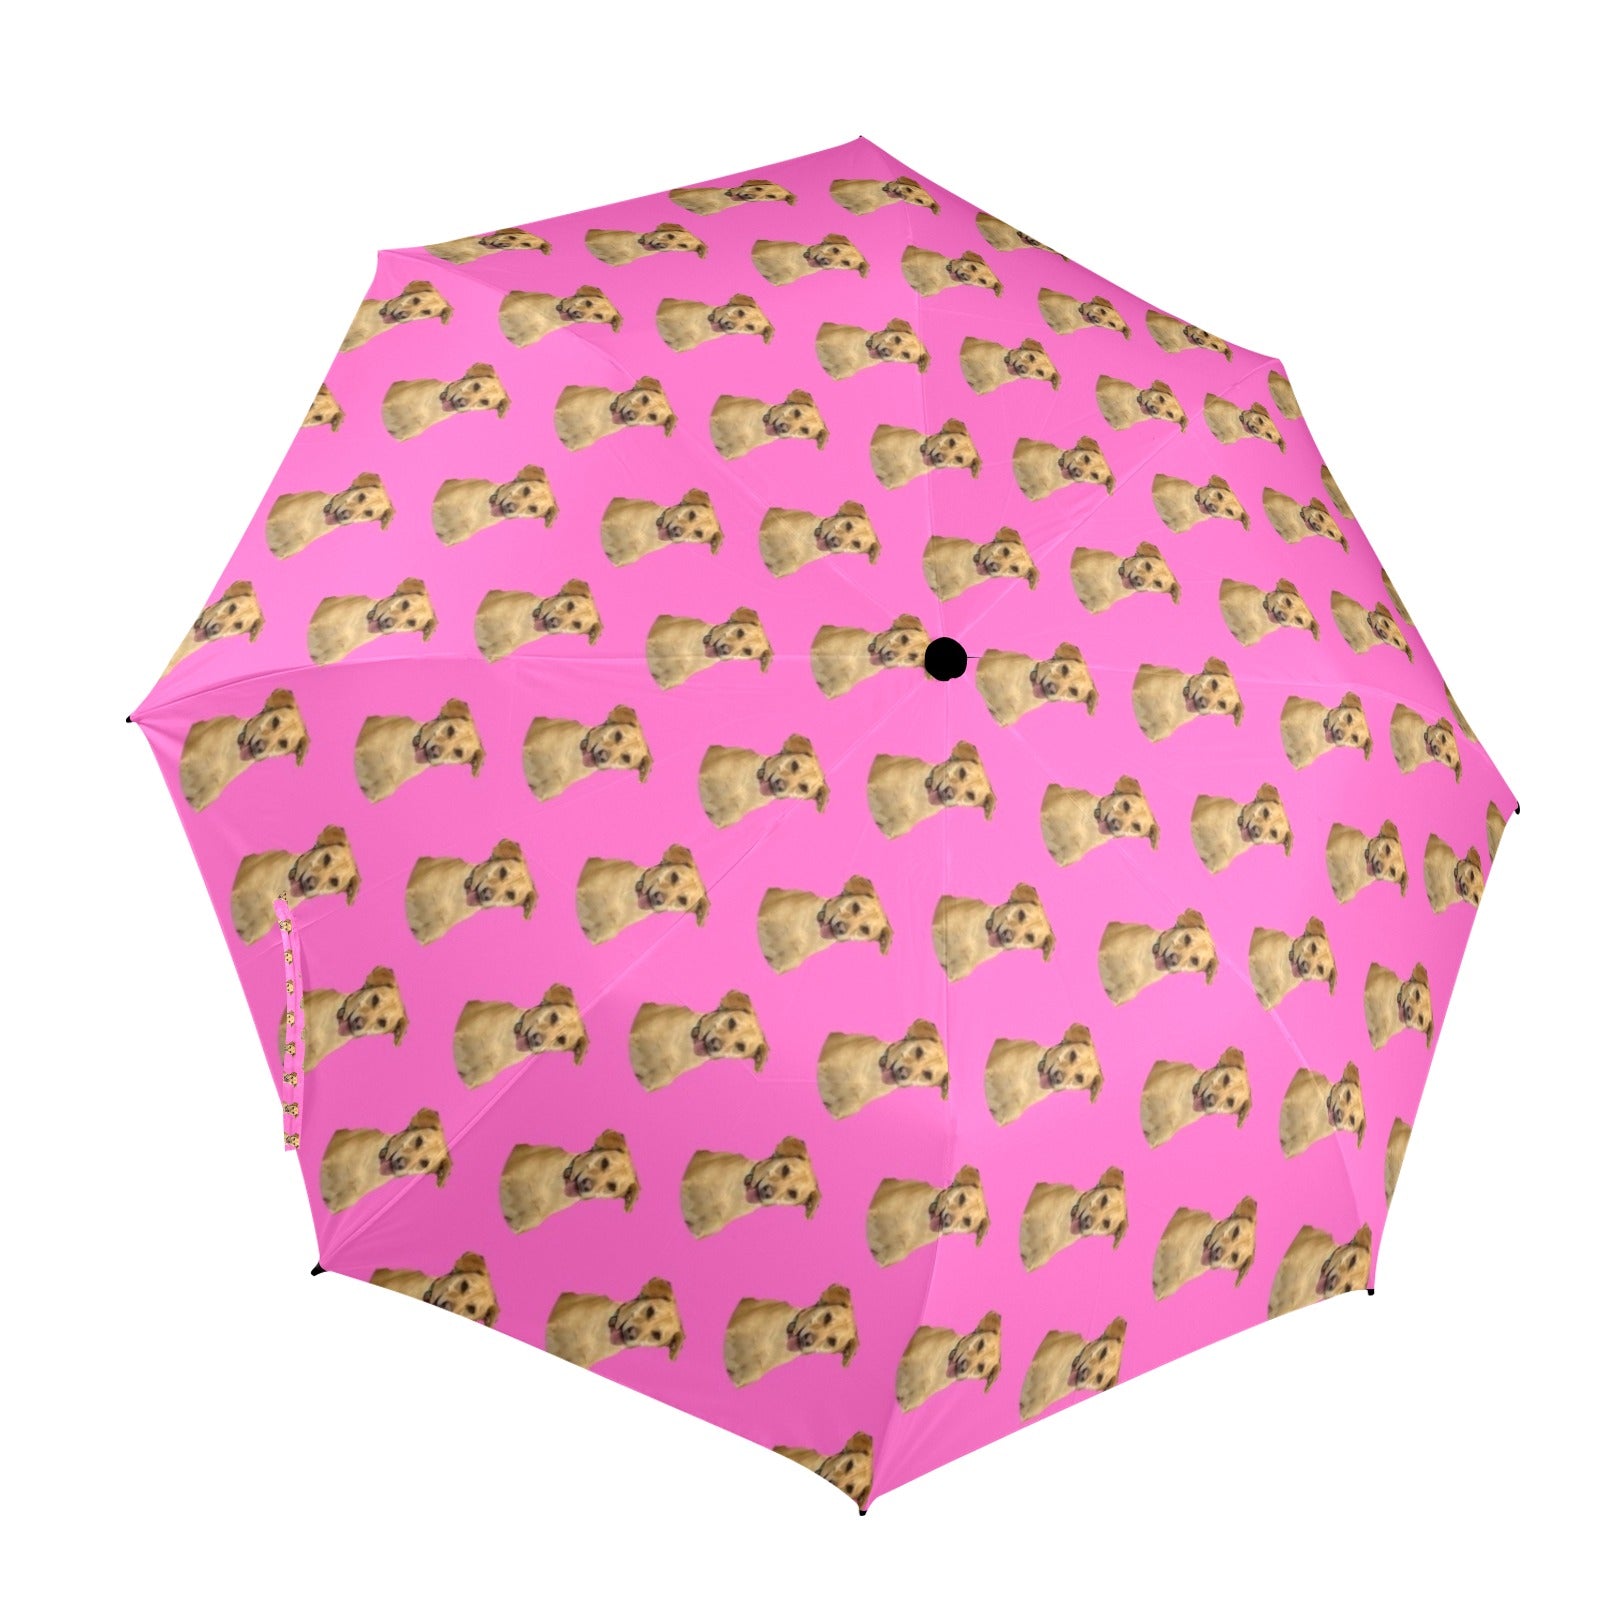 Linda's Umbrella